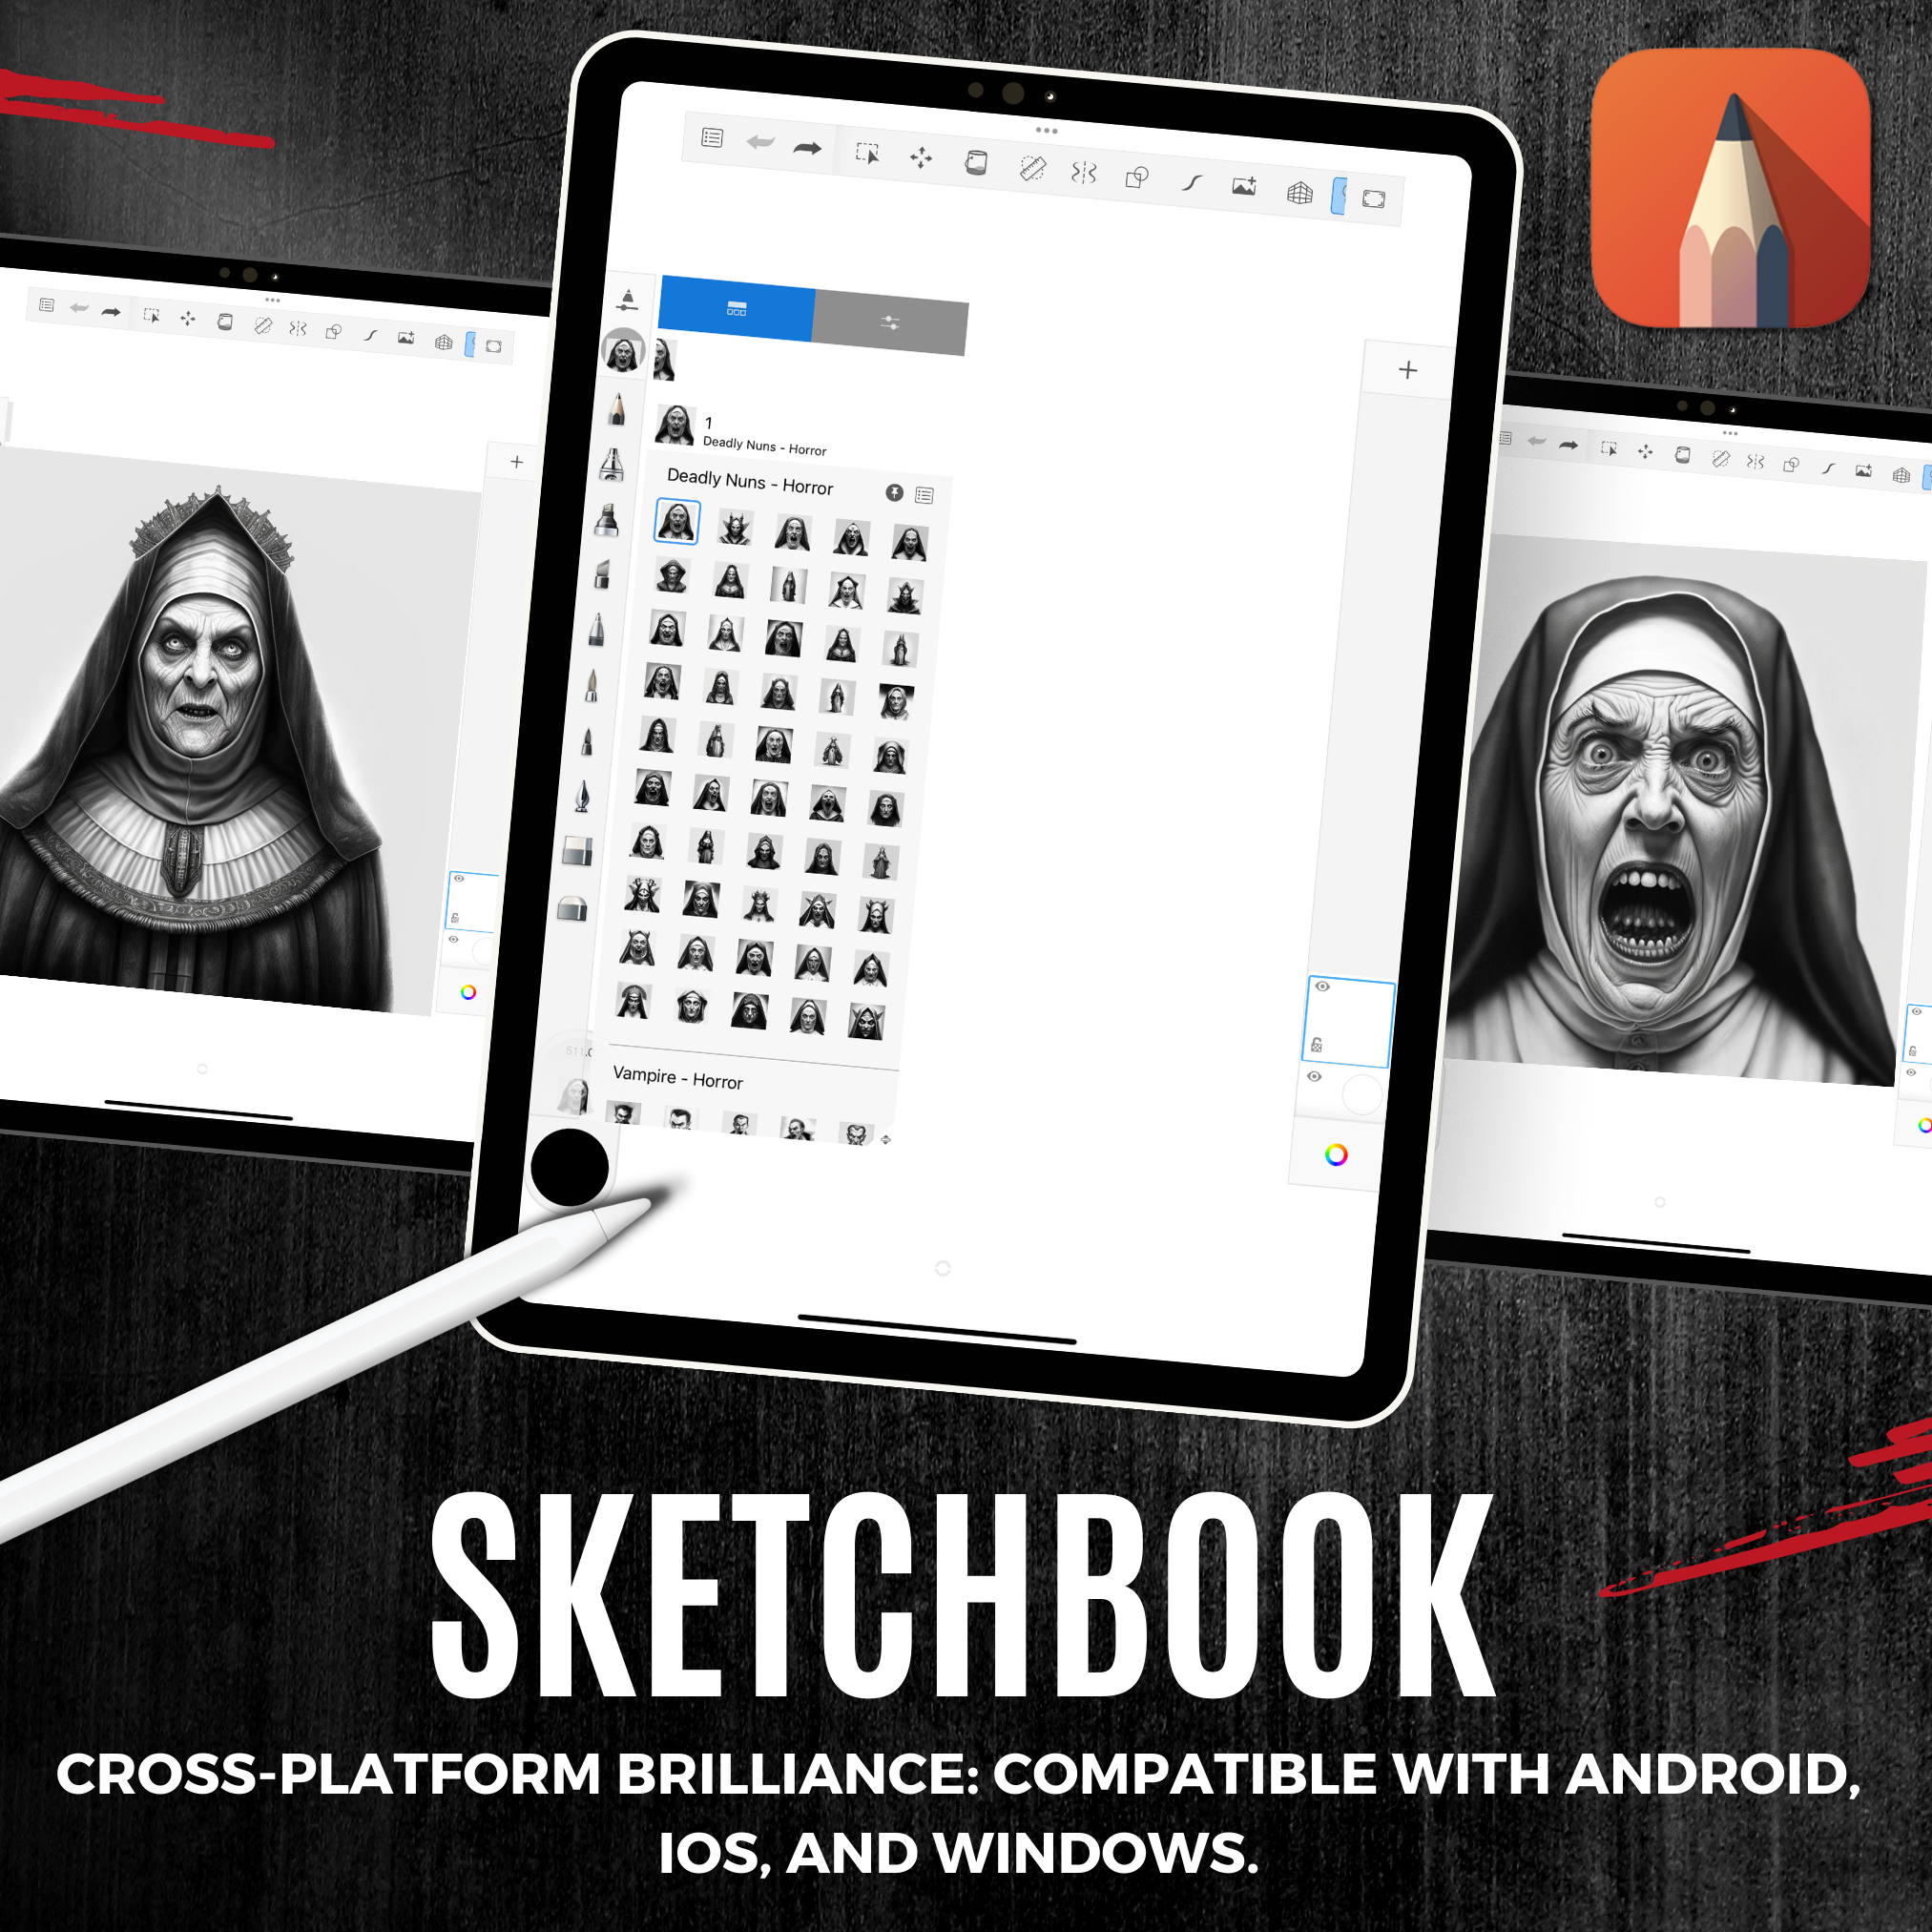 Colección de diseños de terror digital Nuns: 50 imágenes de procreate y cuadernos de bocetos